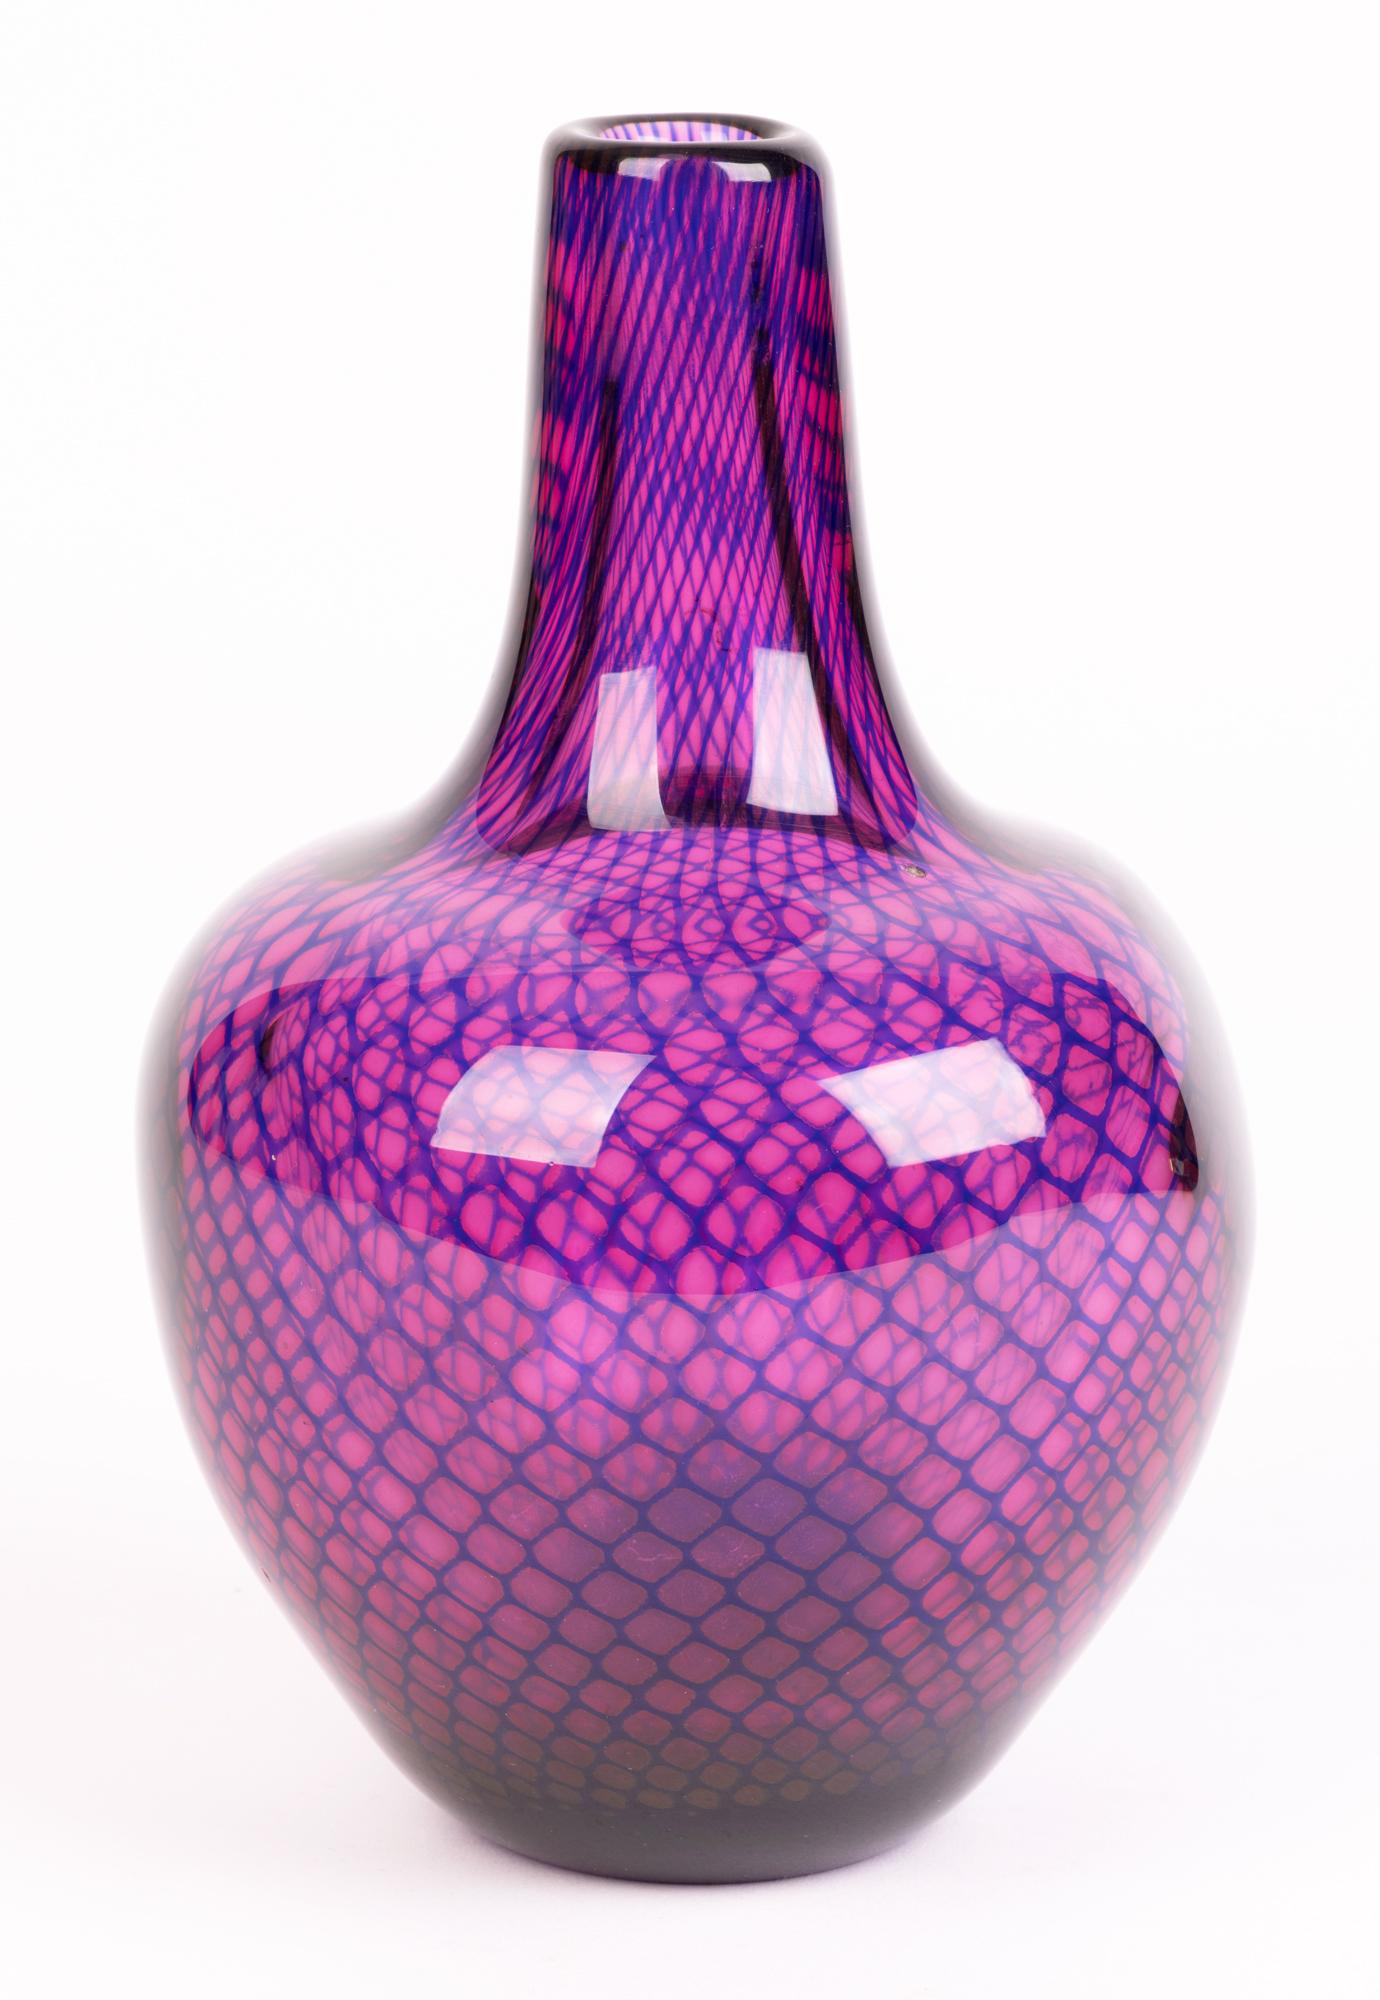 Sven Palmqvist Orrefors Kraka Net Pattern Art Glass Vase For Sale 1